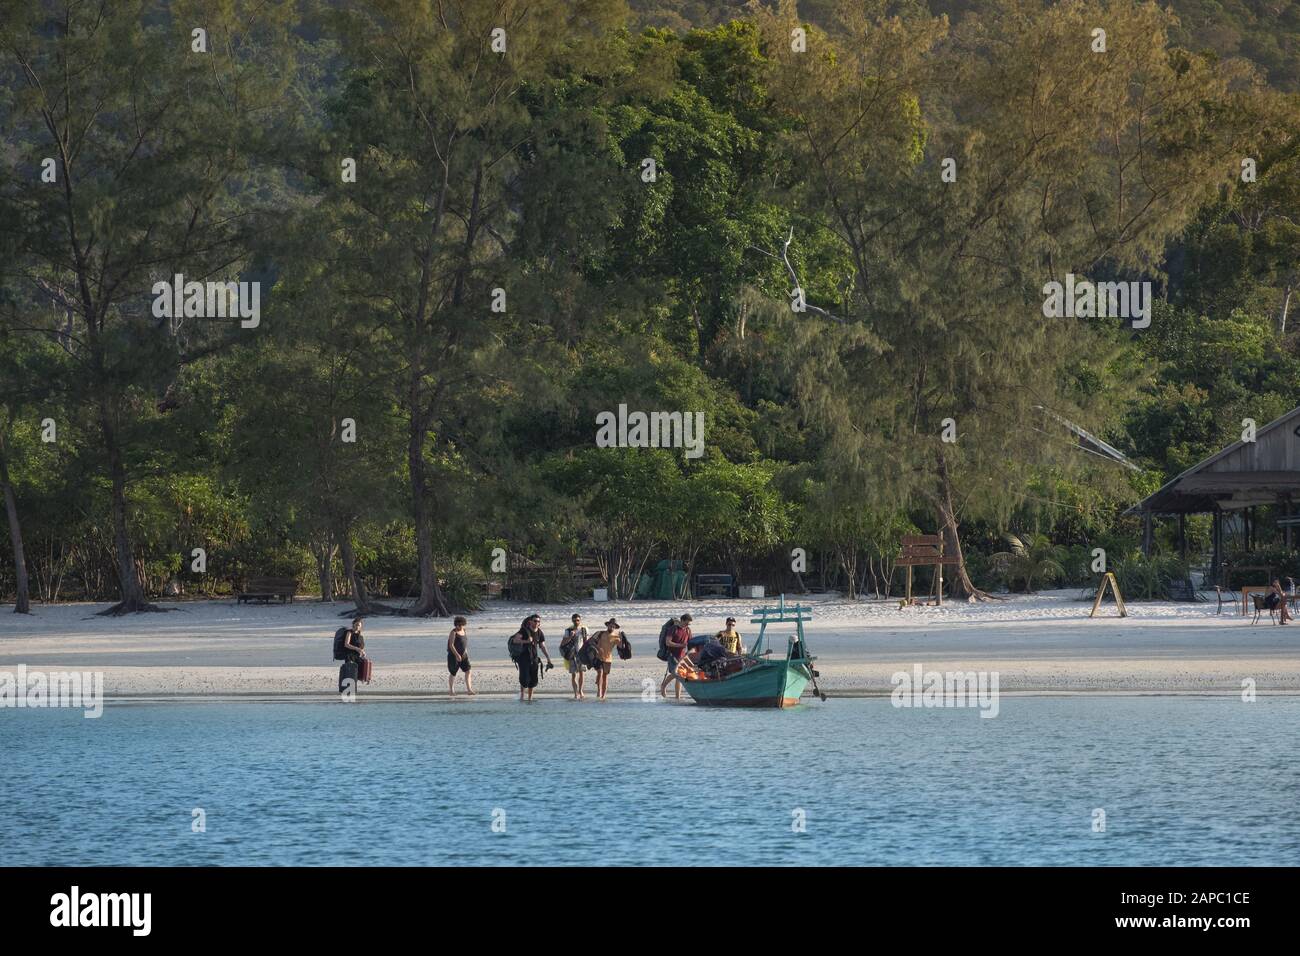 Cambogia, Isole Rong. I turisti che arrivano in barca viaggiano sull'Isola di Koh Rong. Foto Stock